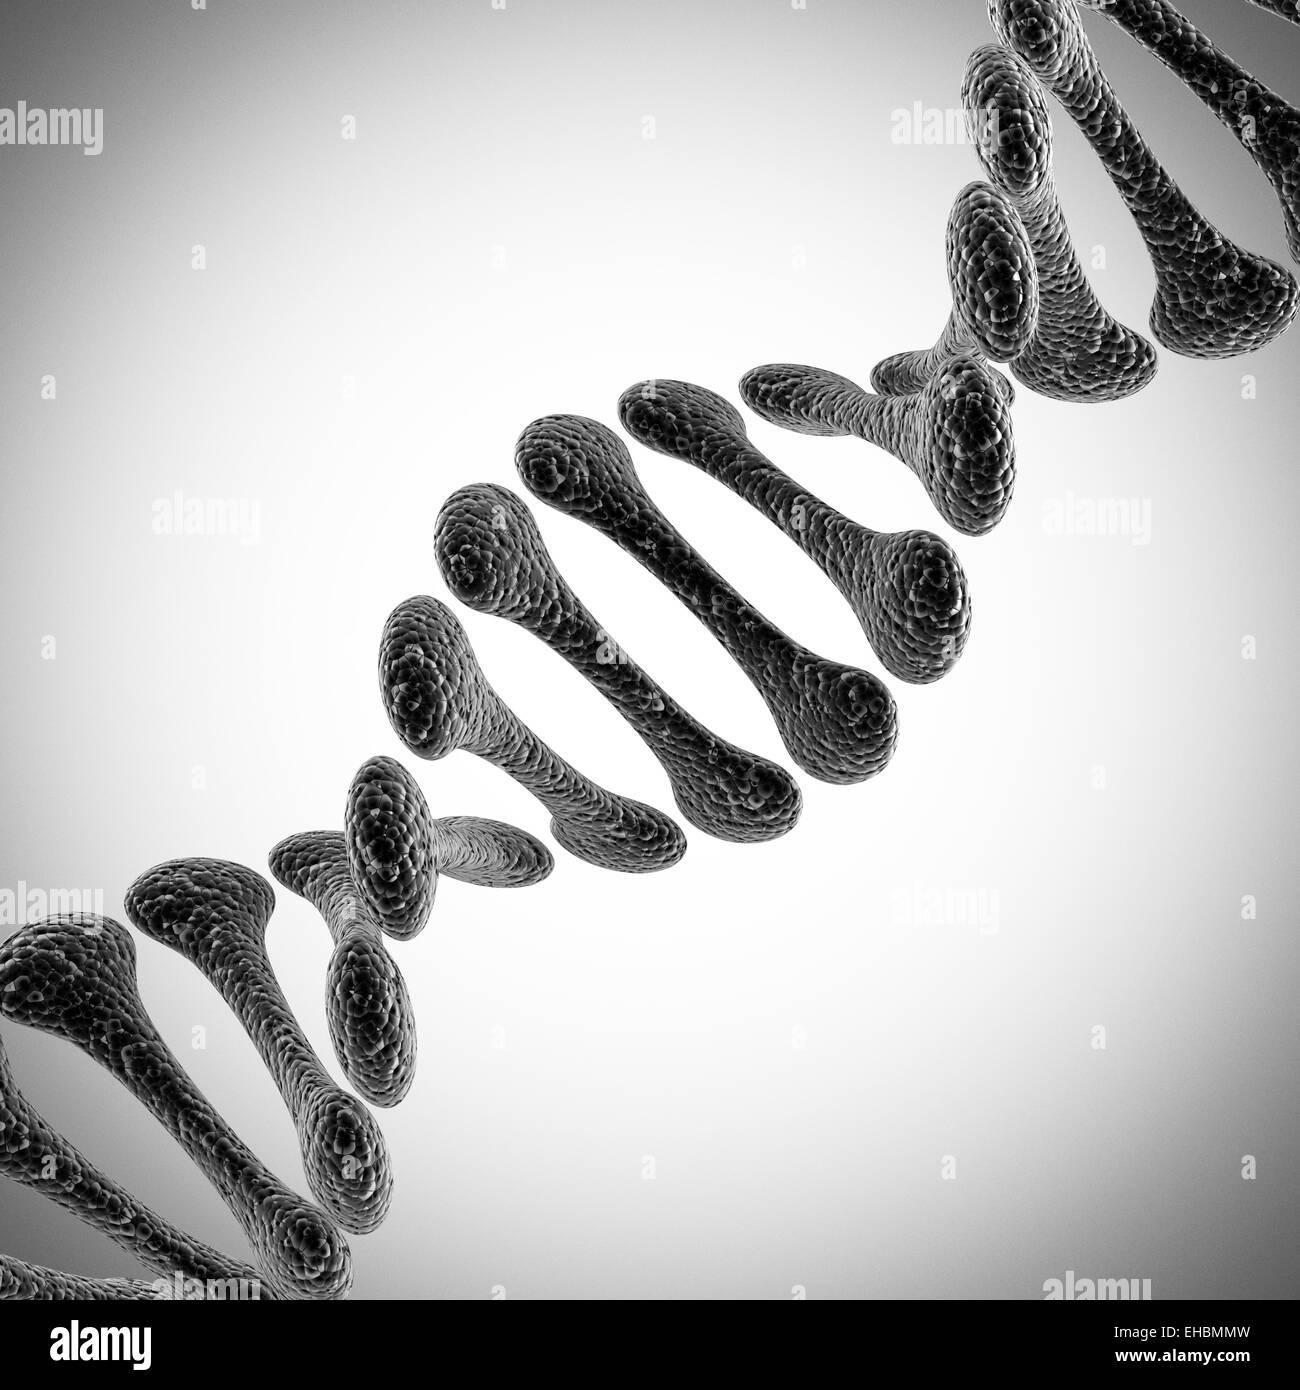 A single DNA scientific illustration Stock Photo